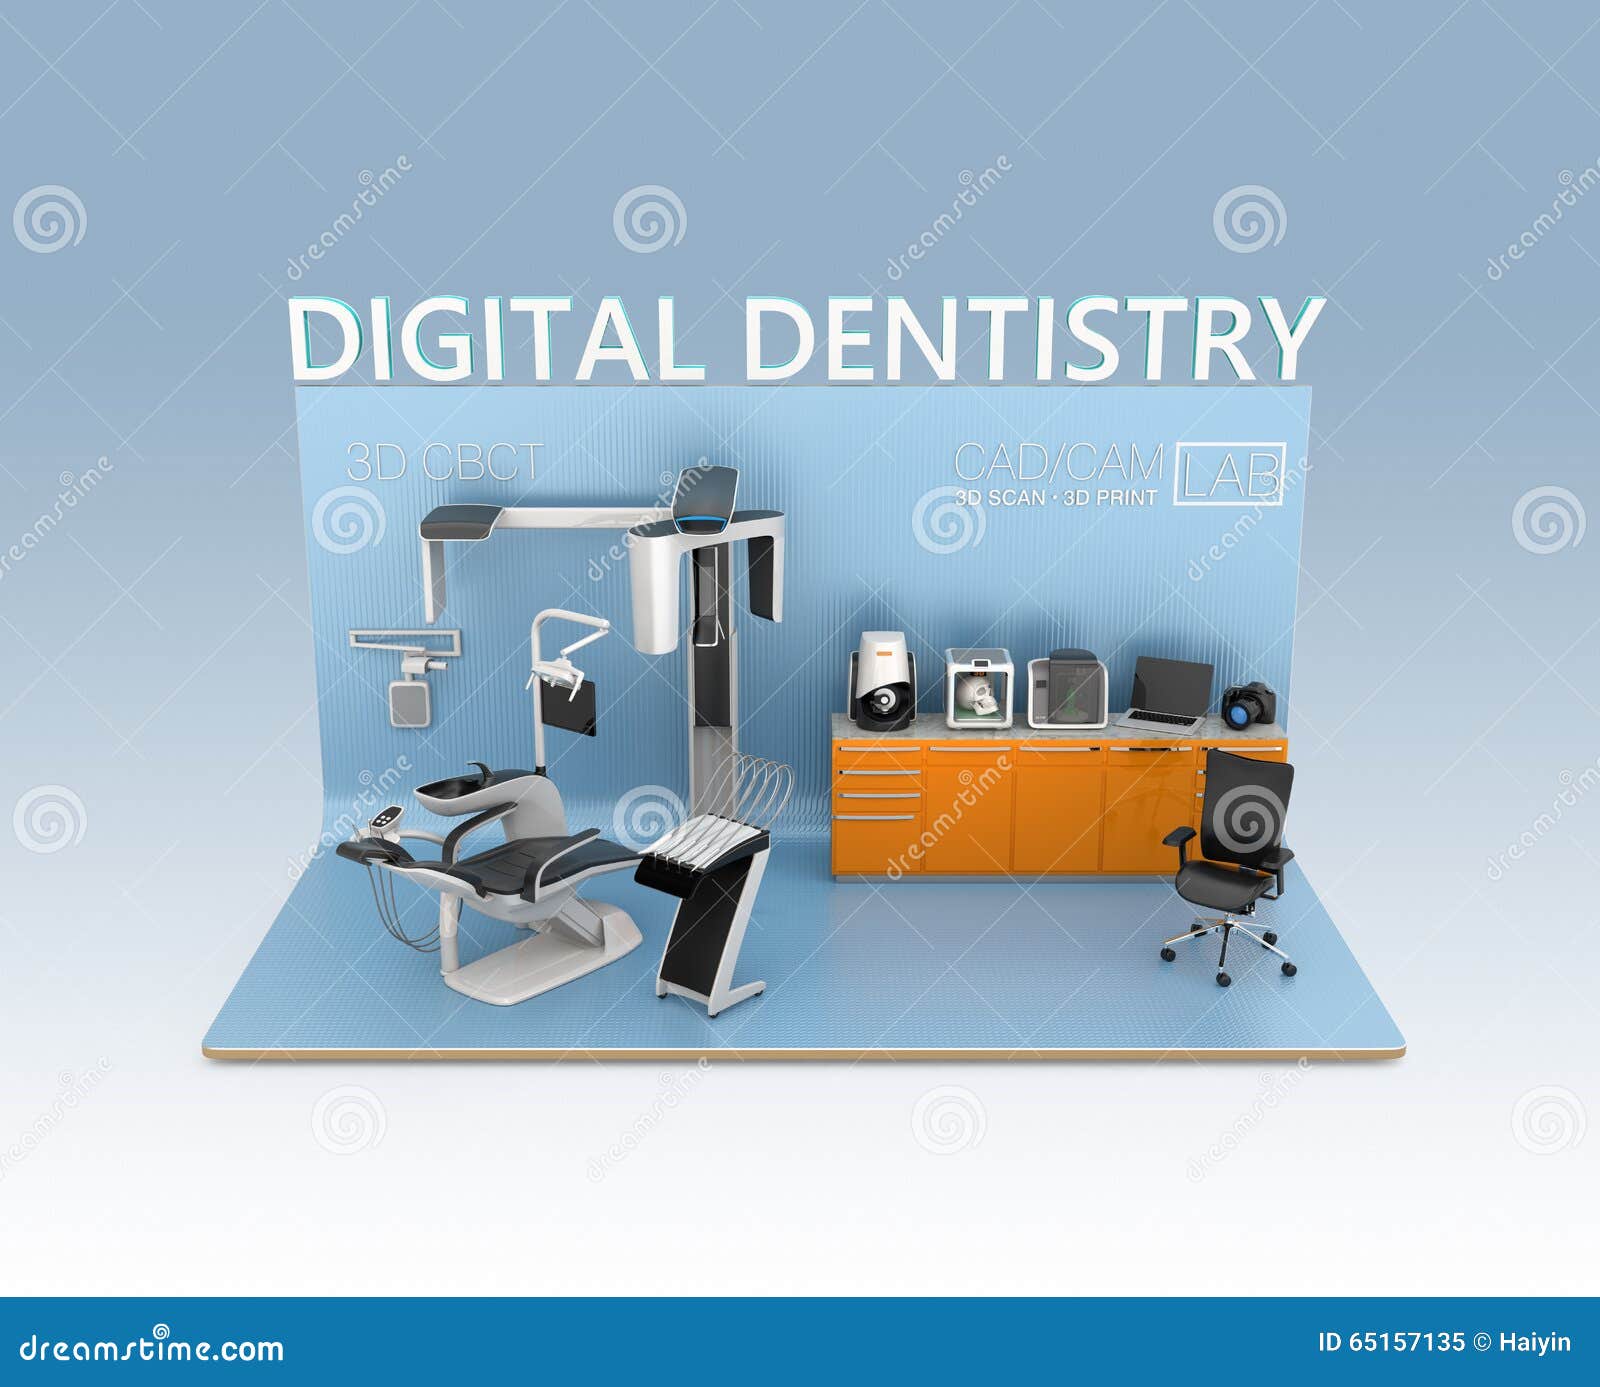 digital dentistry concept